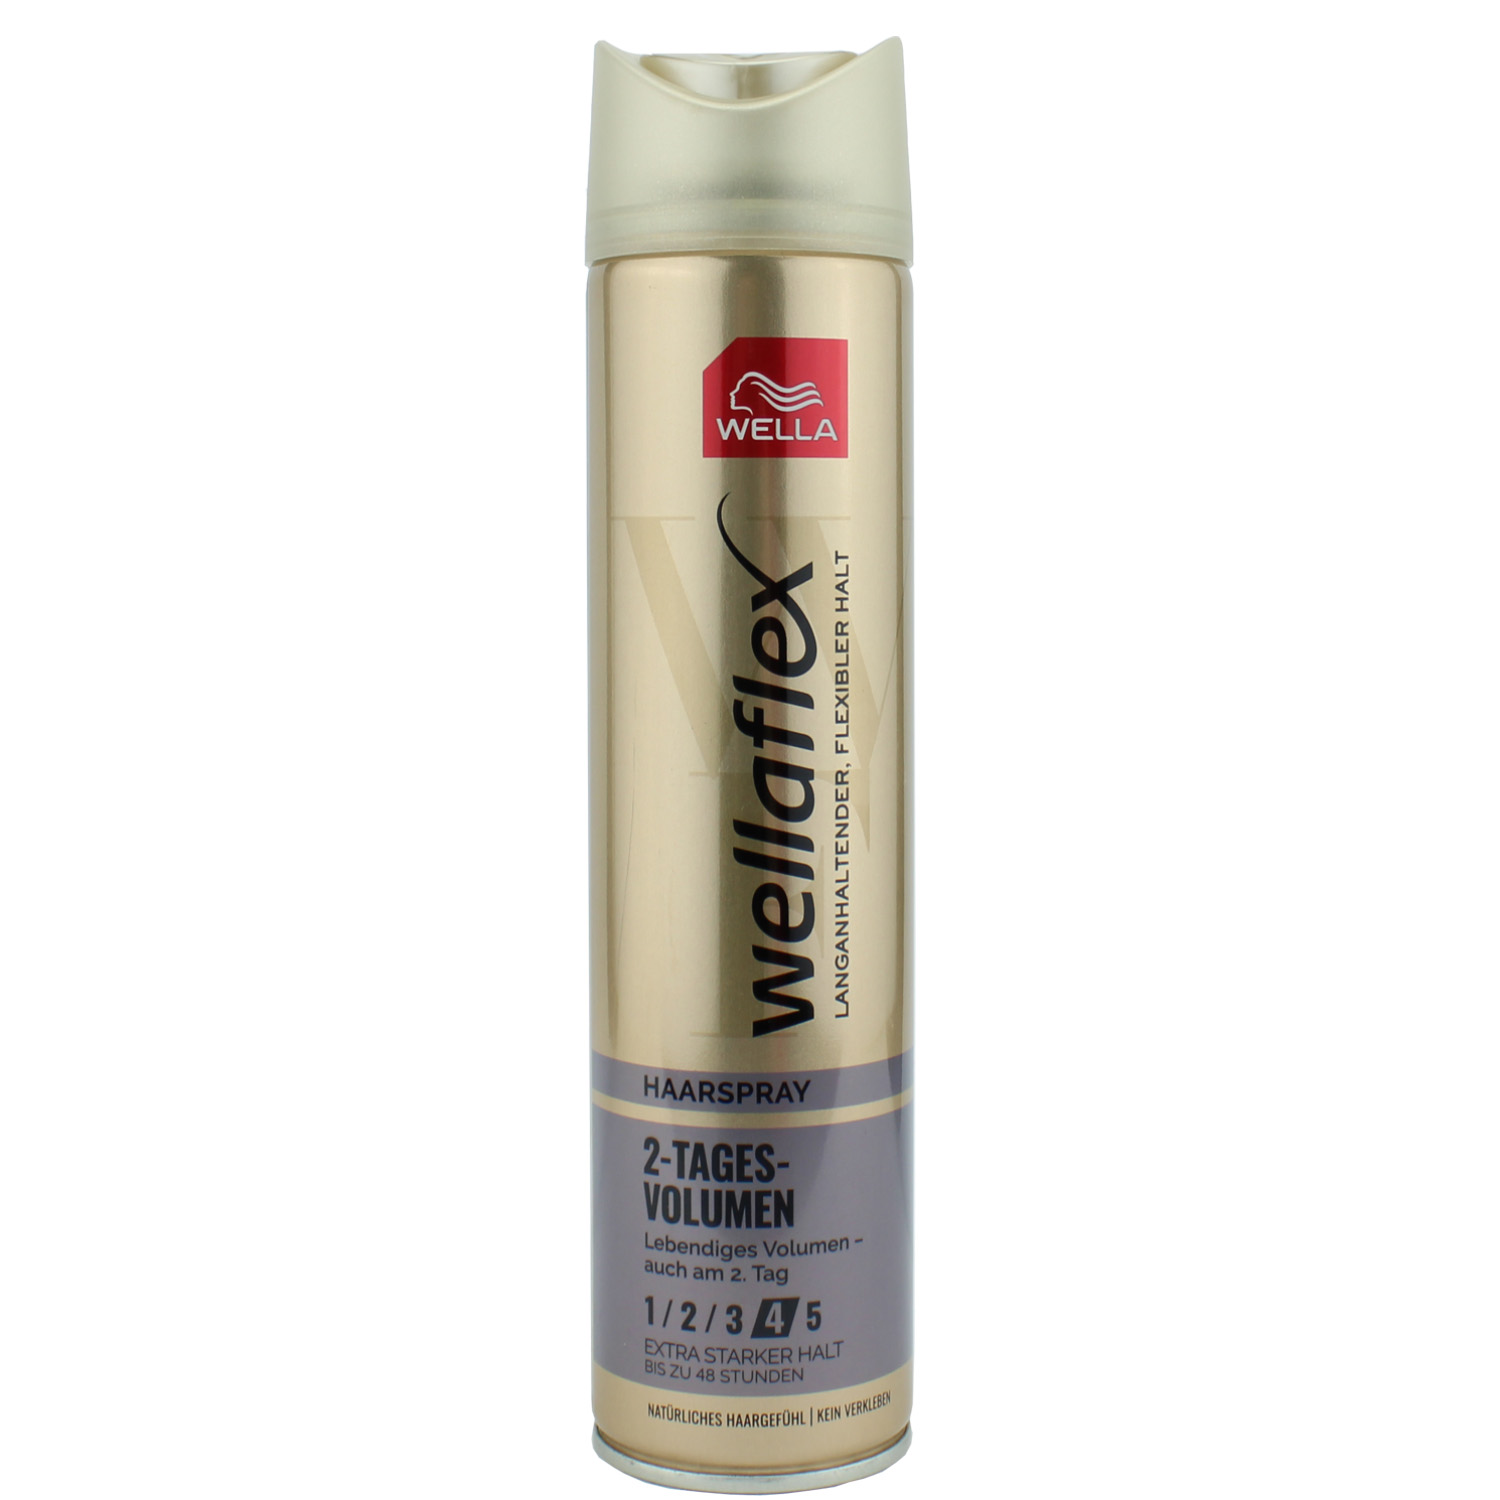 Wella Wellaflex Haarspray 2-Tages-Volumen Extra Starker Halt 250ml